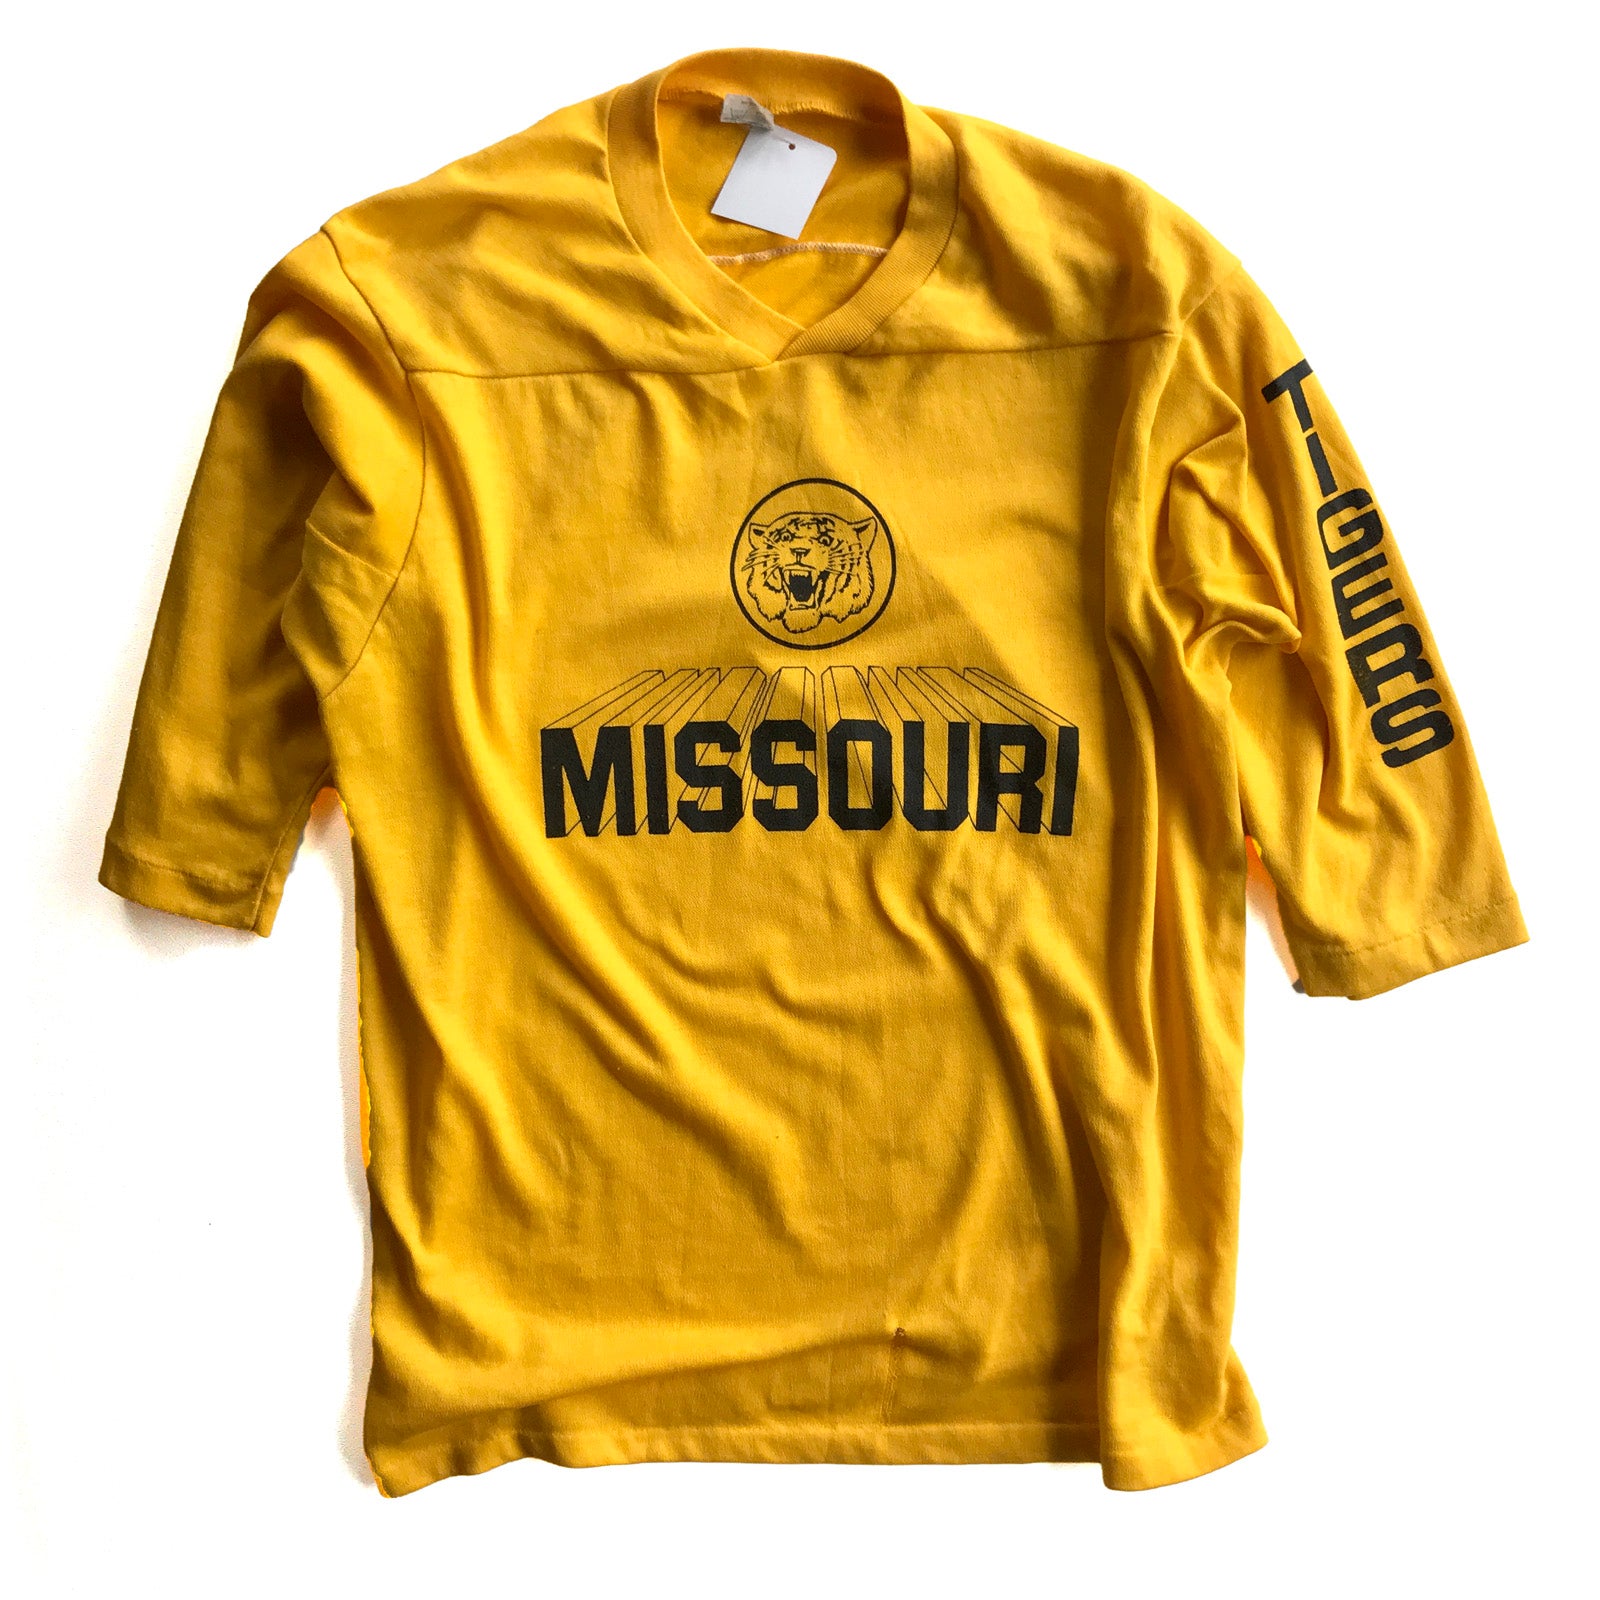 Missouri Jerseys, Missouri Tigers Uniforms